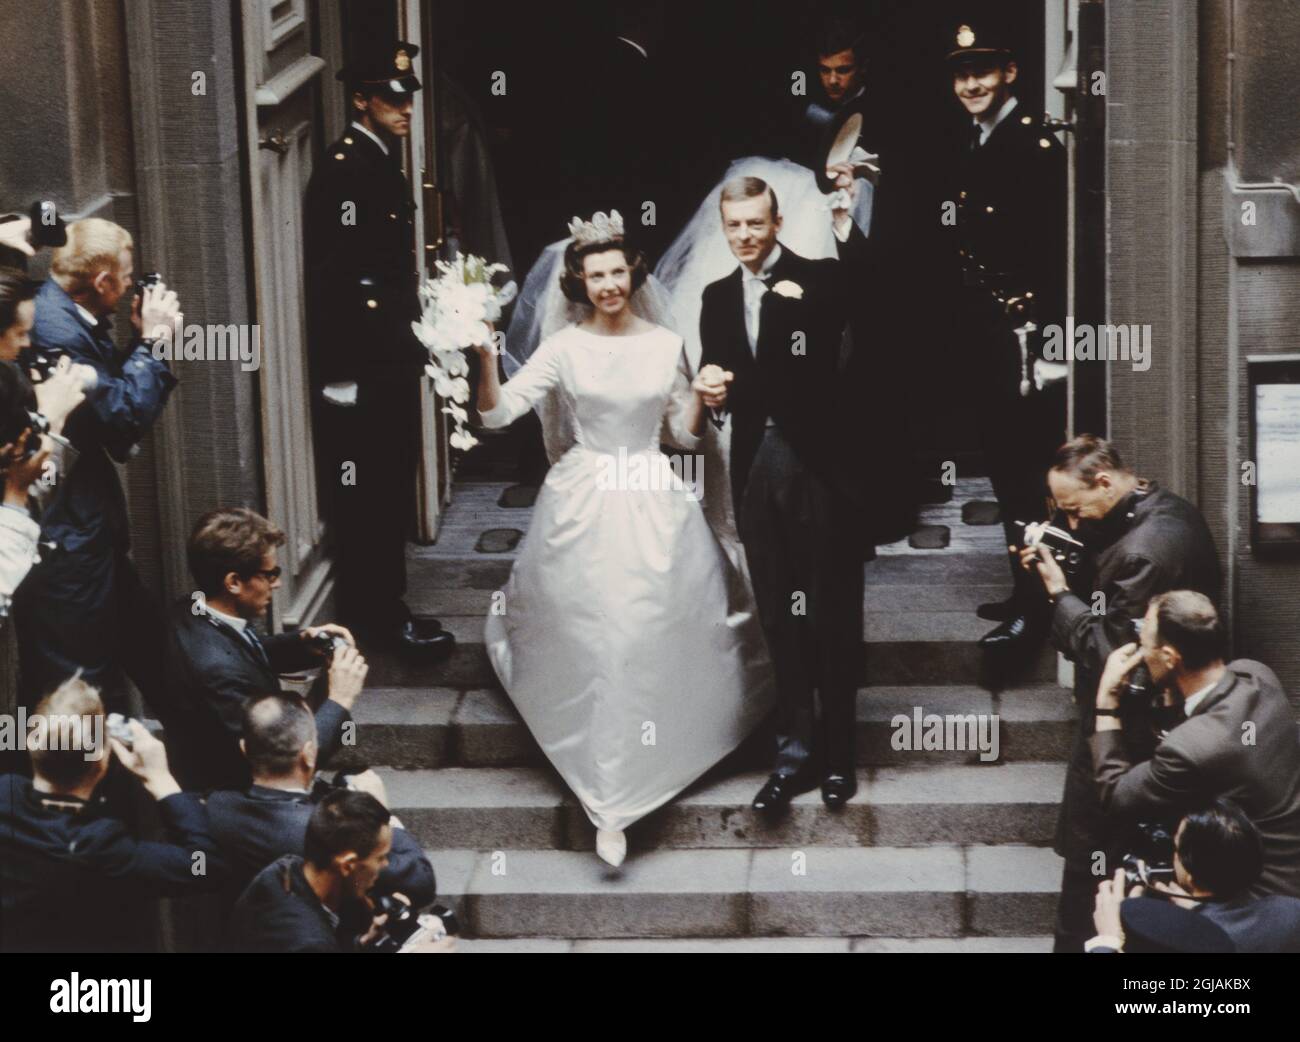 STOCKHOLM 19640605 le mariage de la princesse Desirée (sœur du roi Carl Gustaf et de Niclas Silfverschiold dans la grande cathédrale de Stockholm, Suède. Foto: / / SCANPIX Kod 190 Banque D'Images